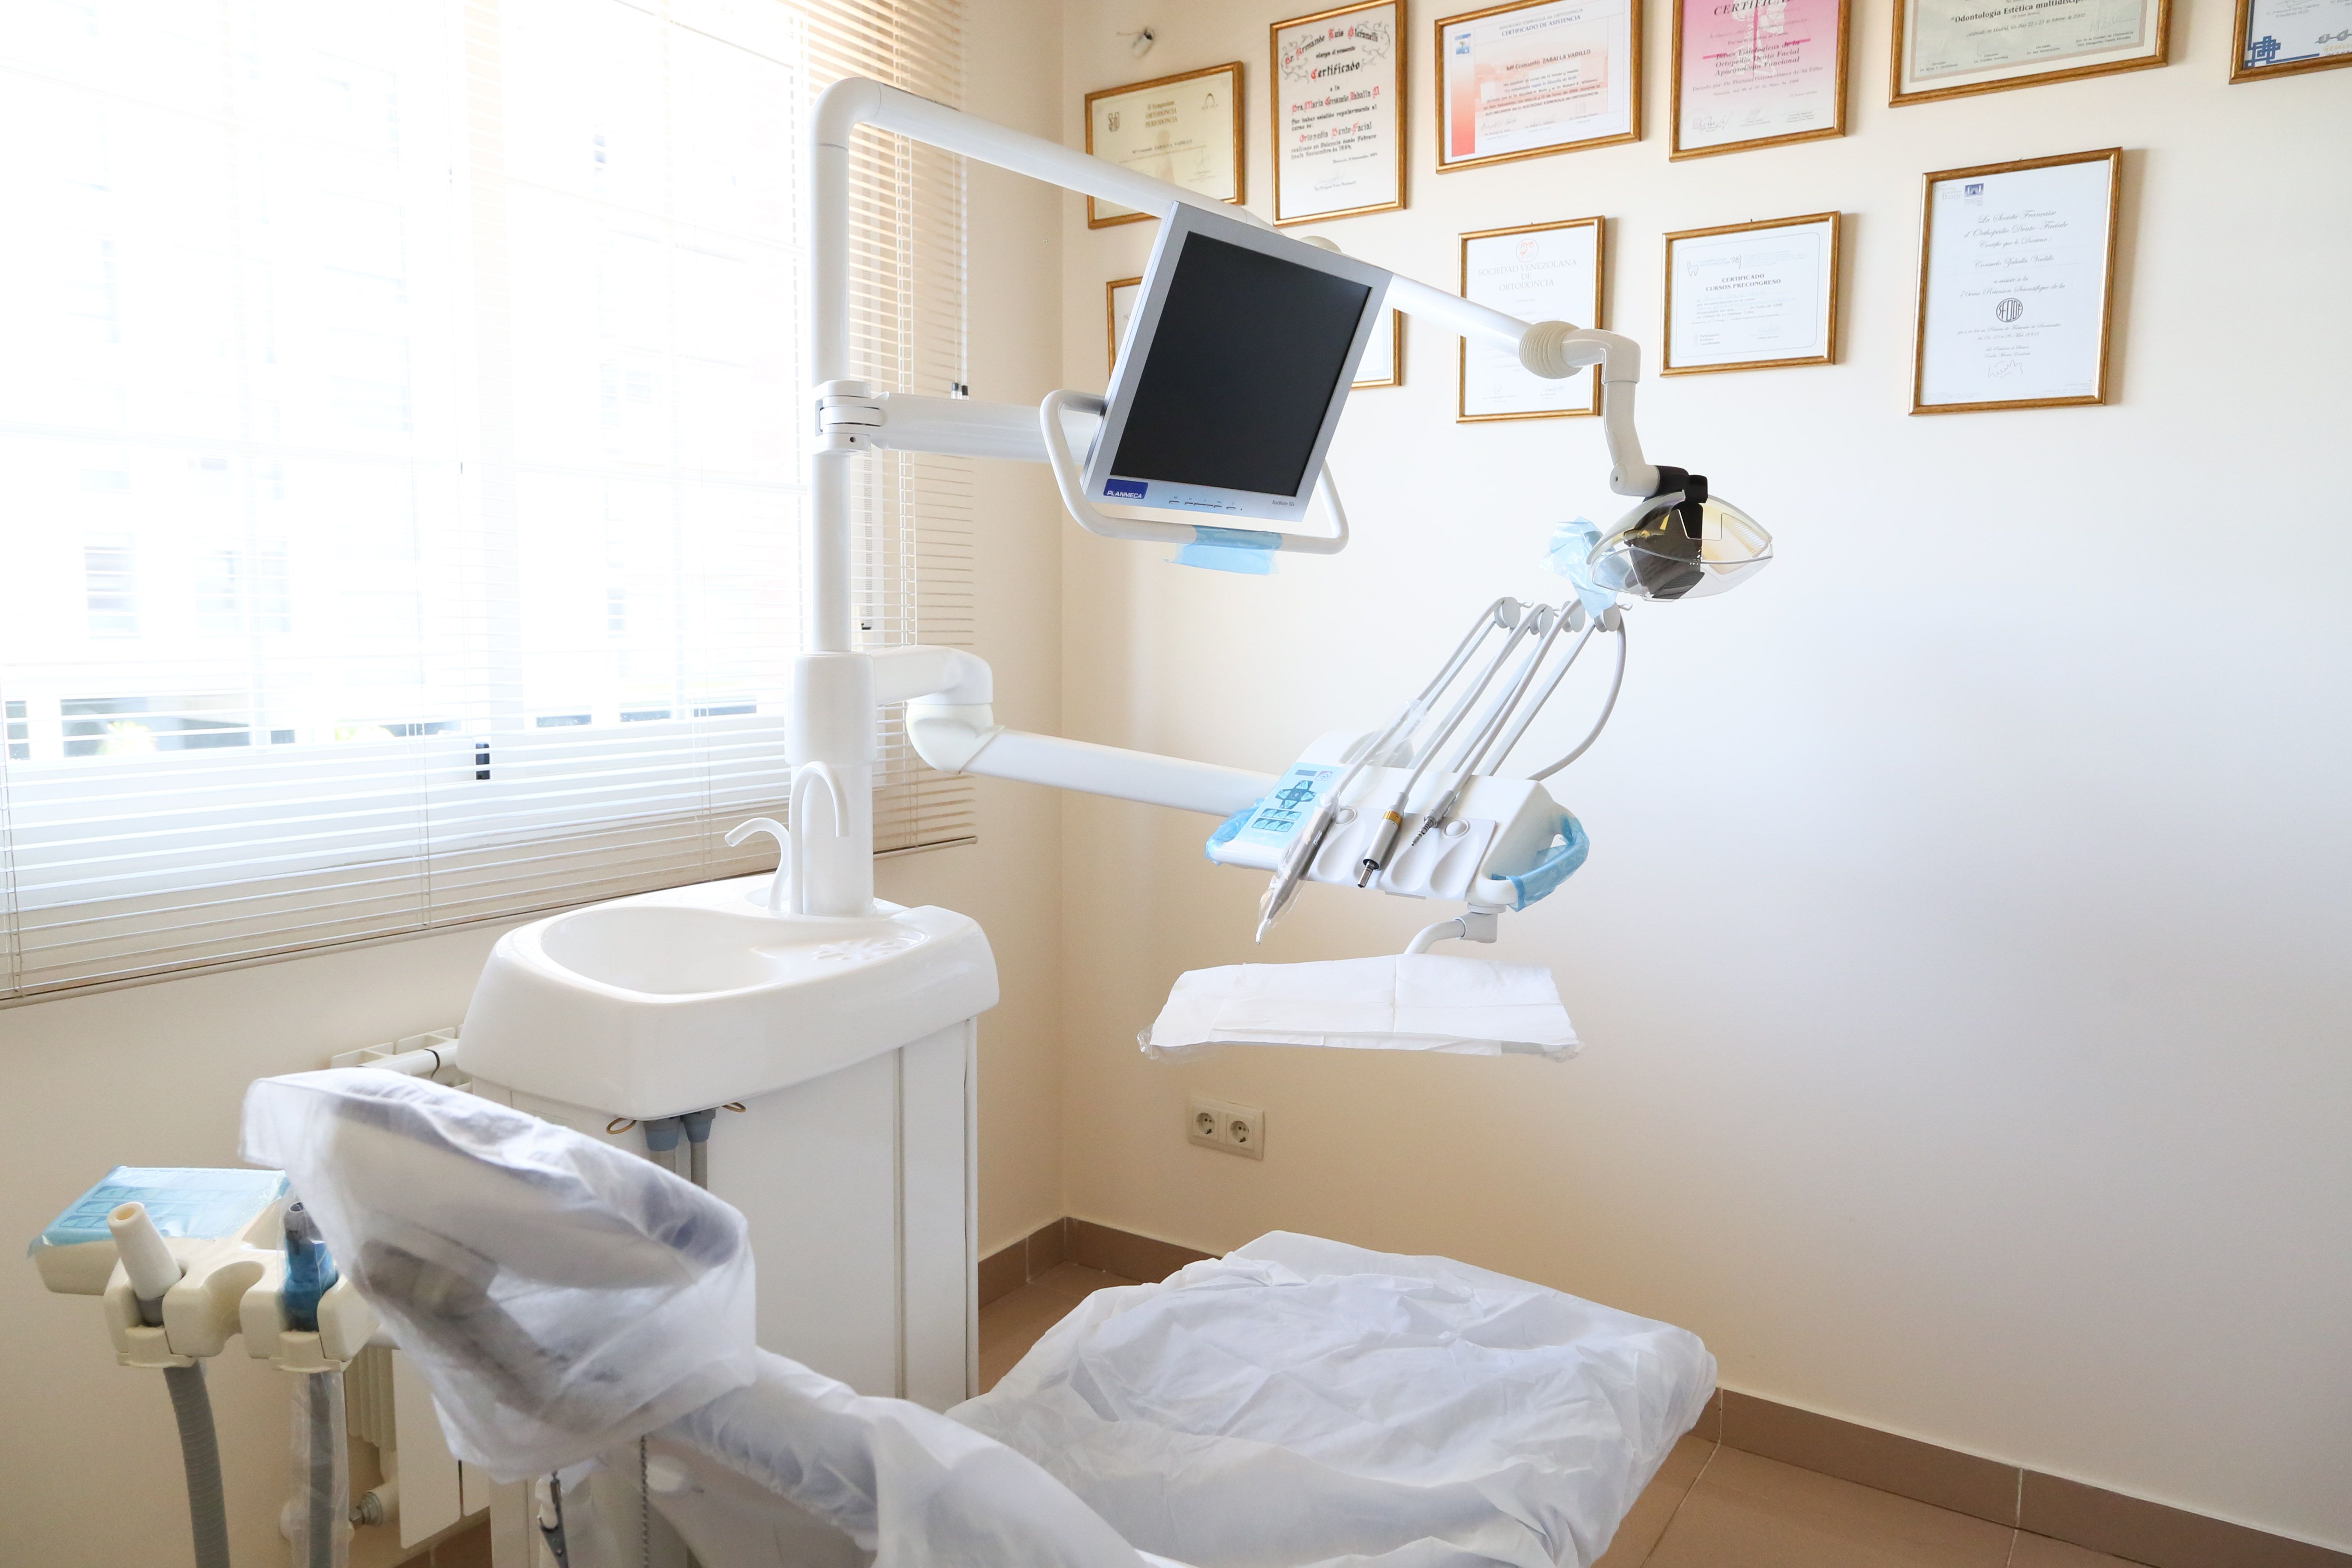 Foto 8 de Dentistas en Madrid | Clínica Dental Dra. Consuelo Zaballa